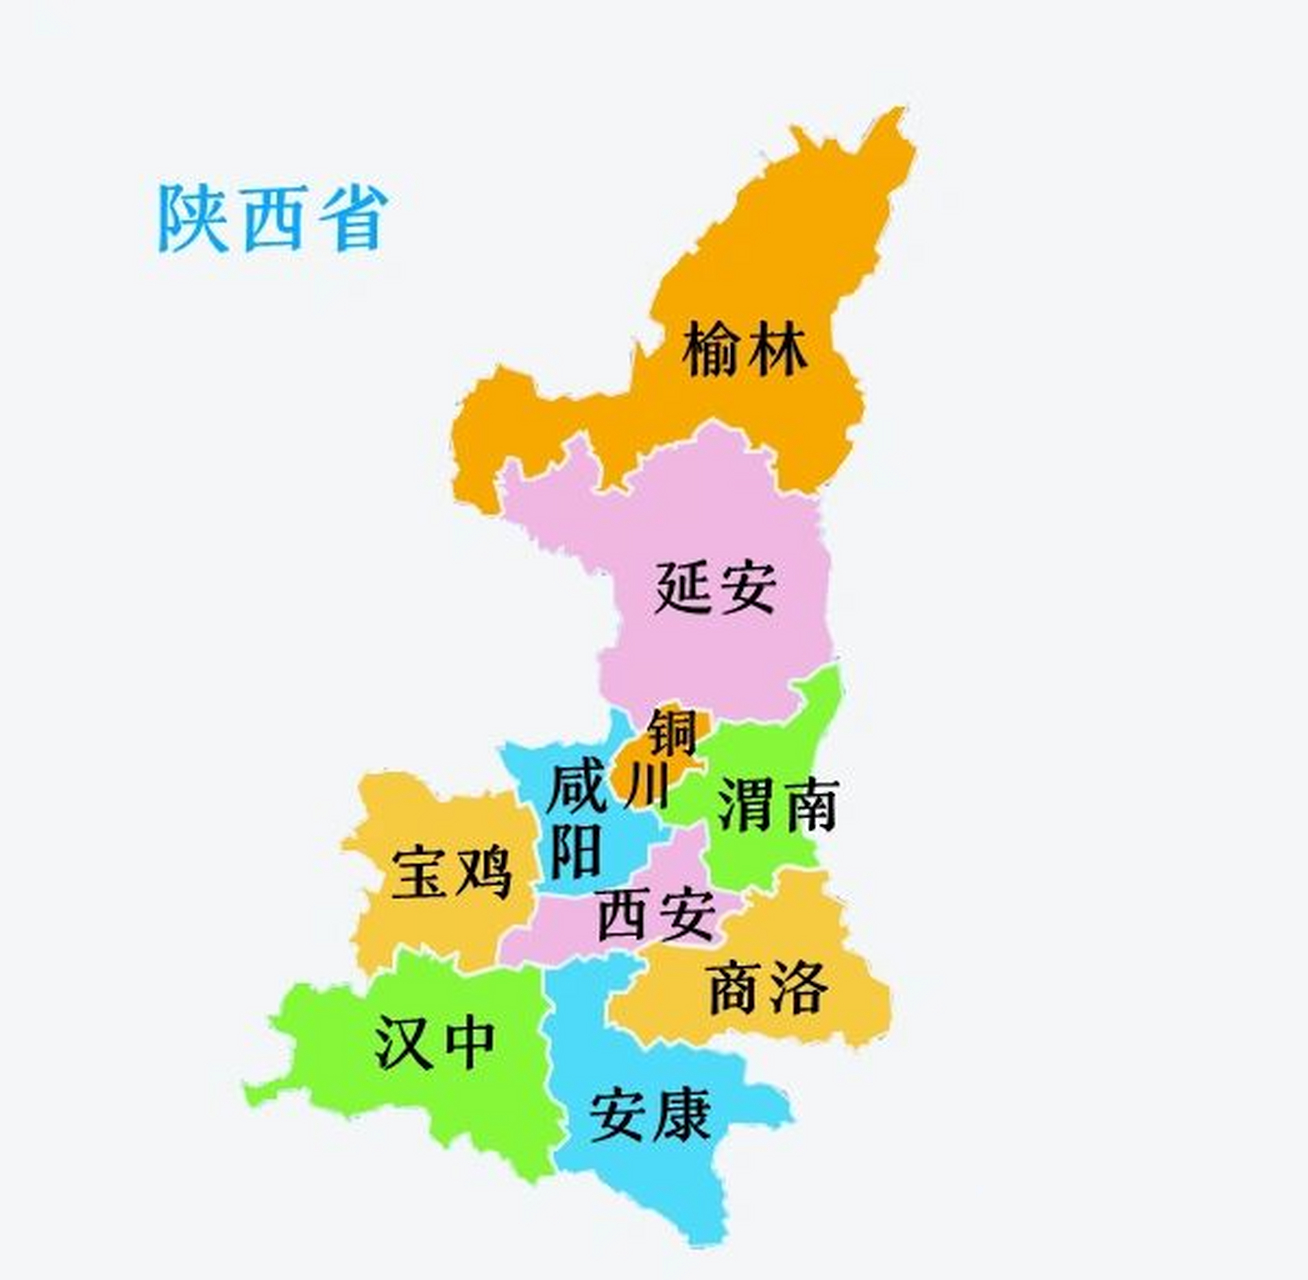 陕西地图简图图片